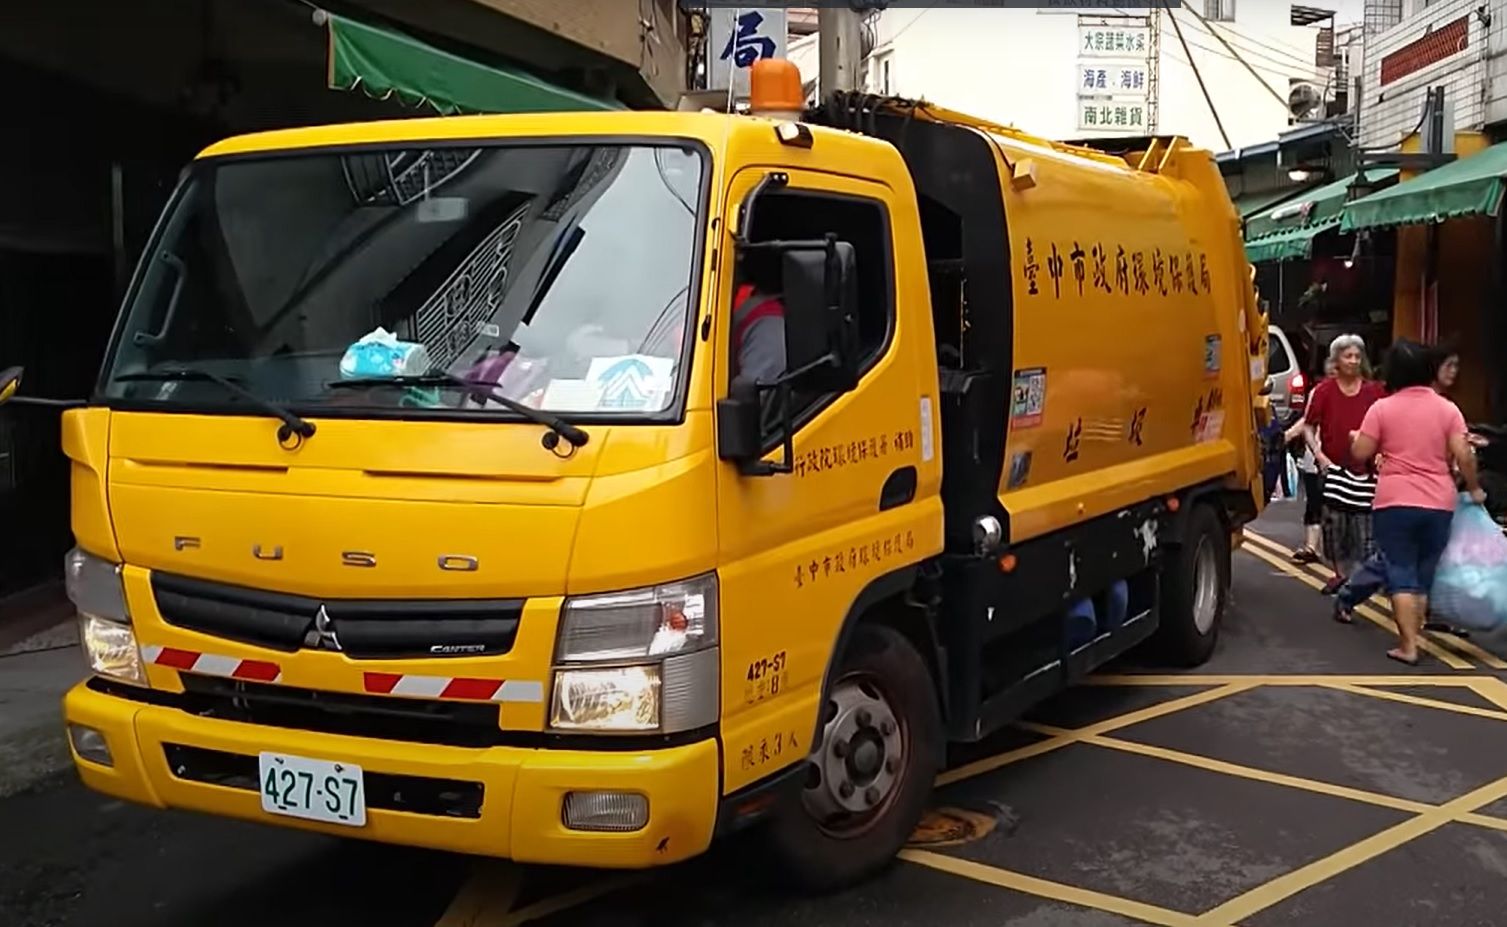 Müllabfuhr als kulturelles Erlebnis.  Müllsammler in Taiwan führen Beethoven auf